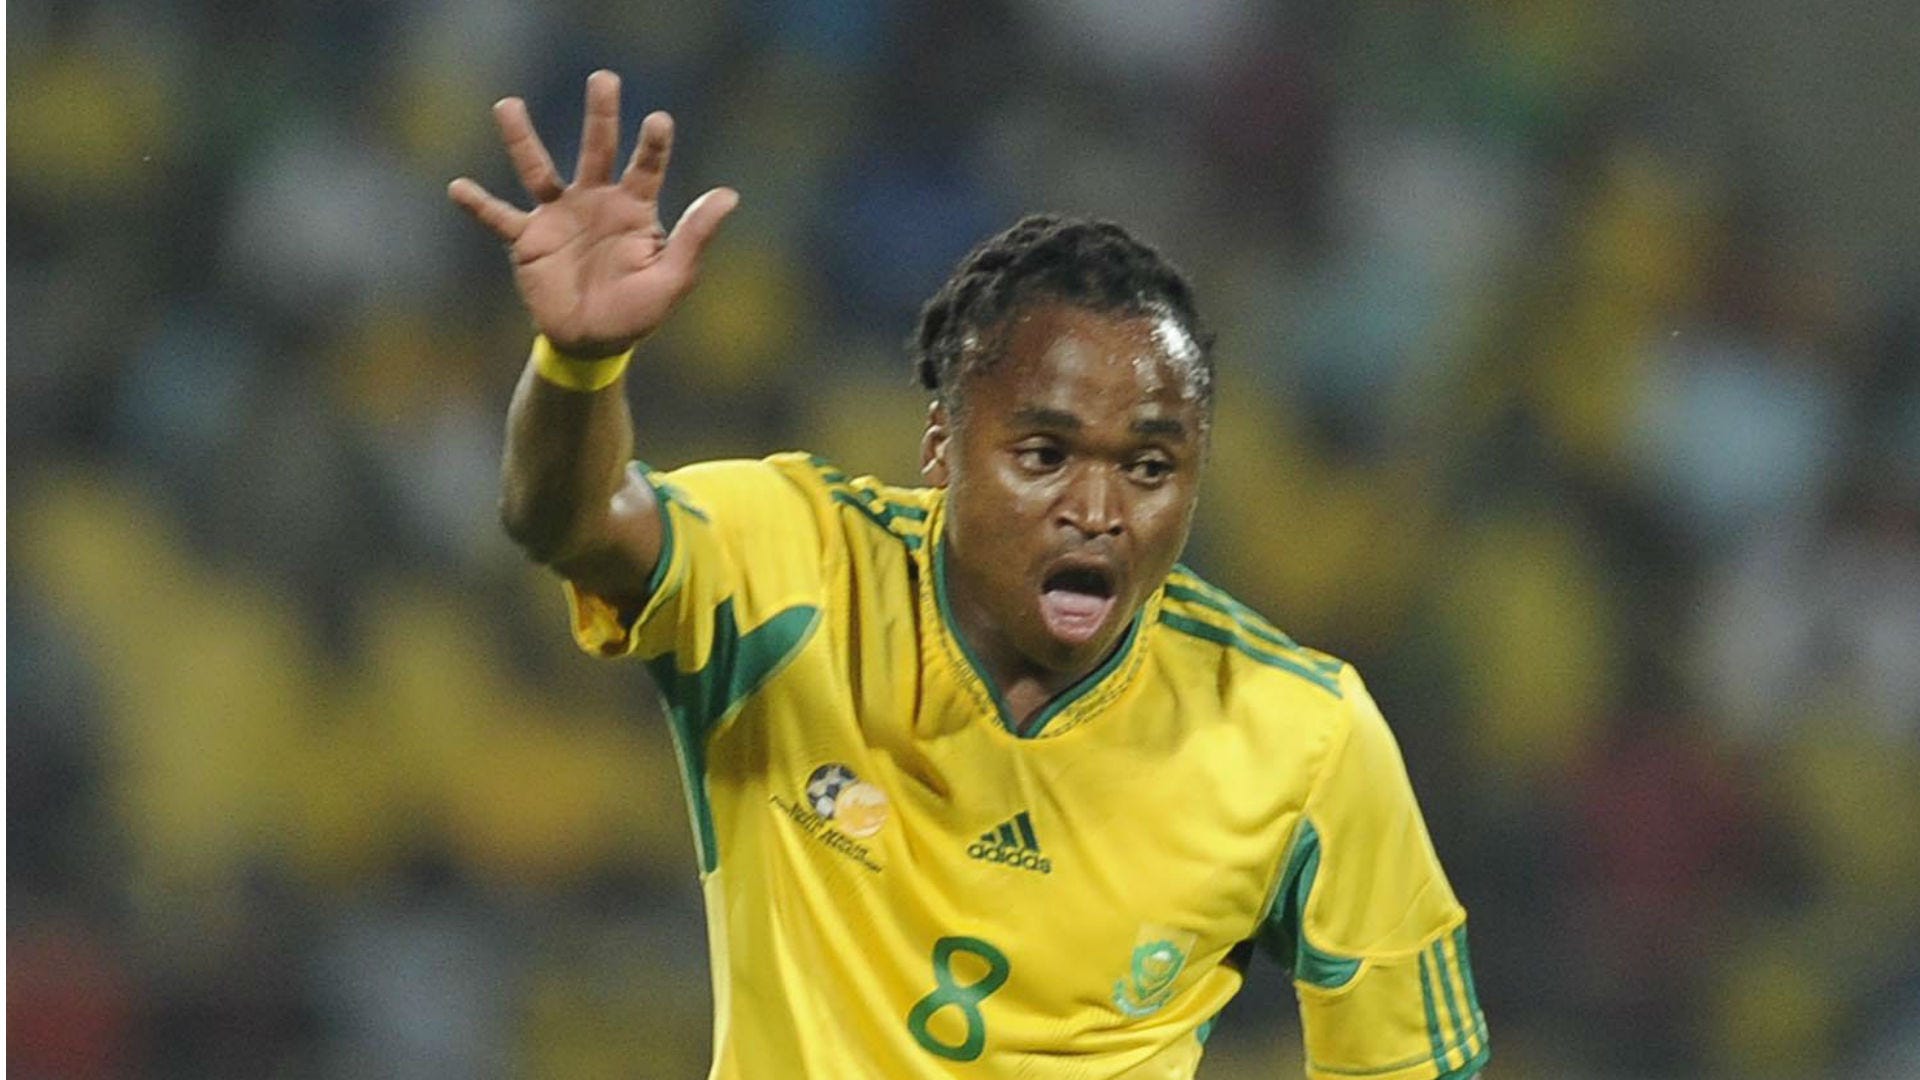 Siphiwe Tshabalala represents Bafana Bafana